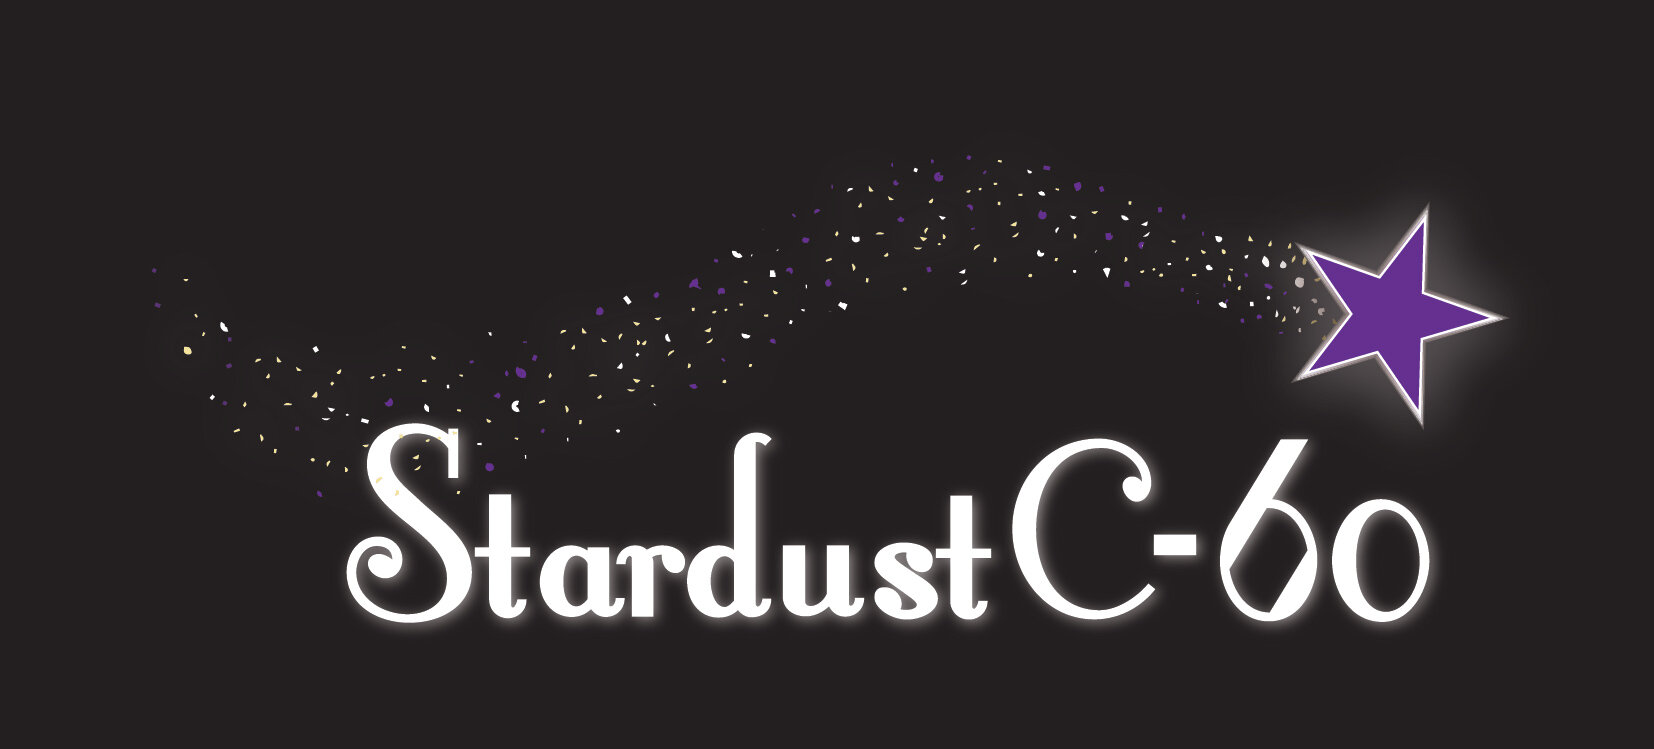 Stardust C60